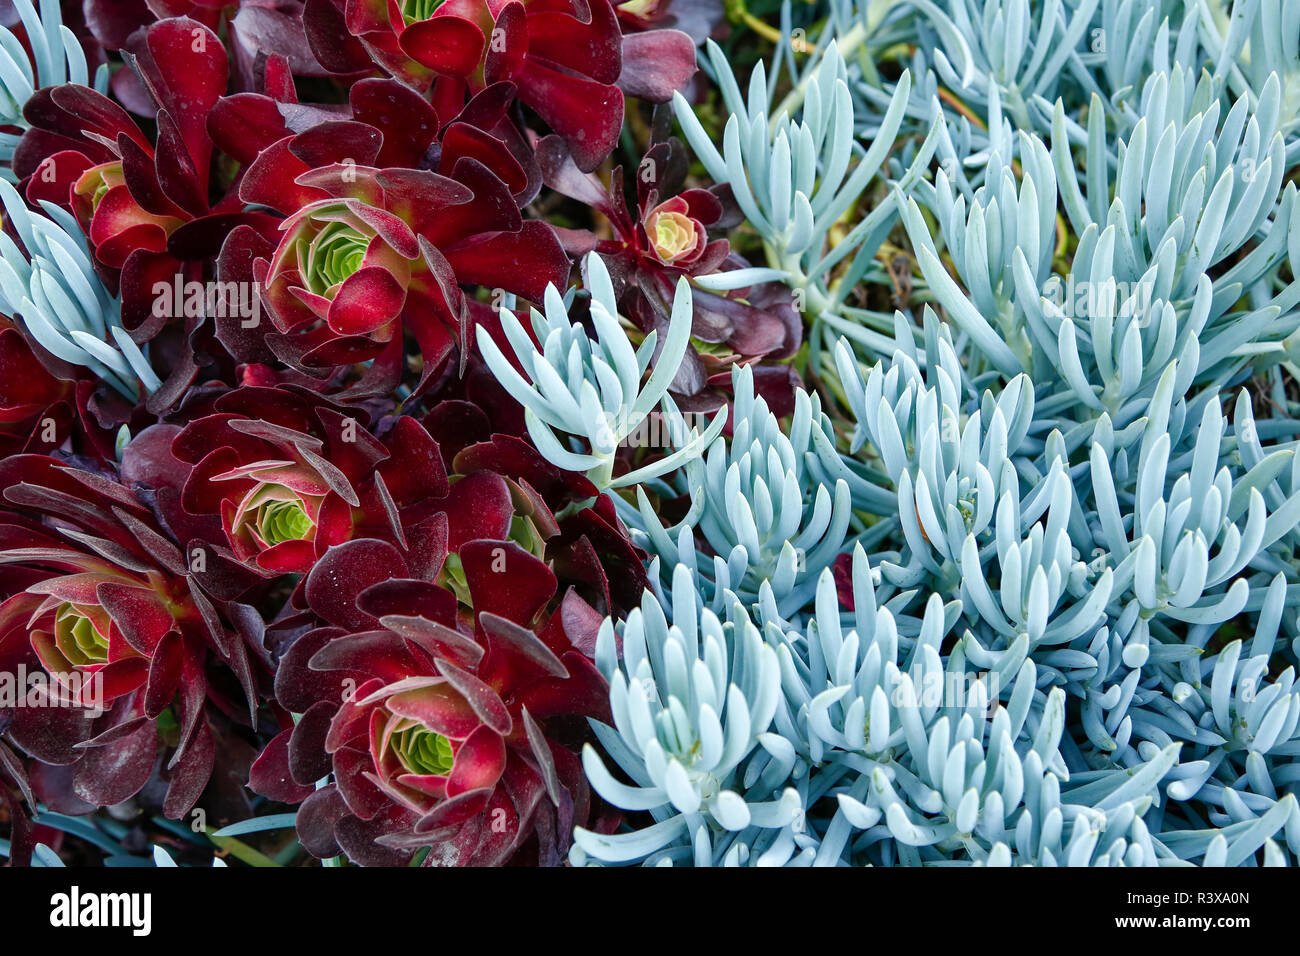 Purple Crest Aeonium and Senecio Blue succulents in Los Angeles, California, USA Stock Photo